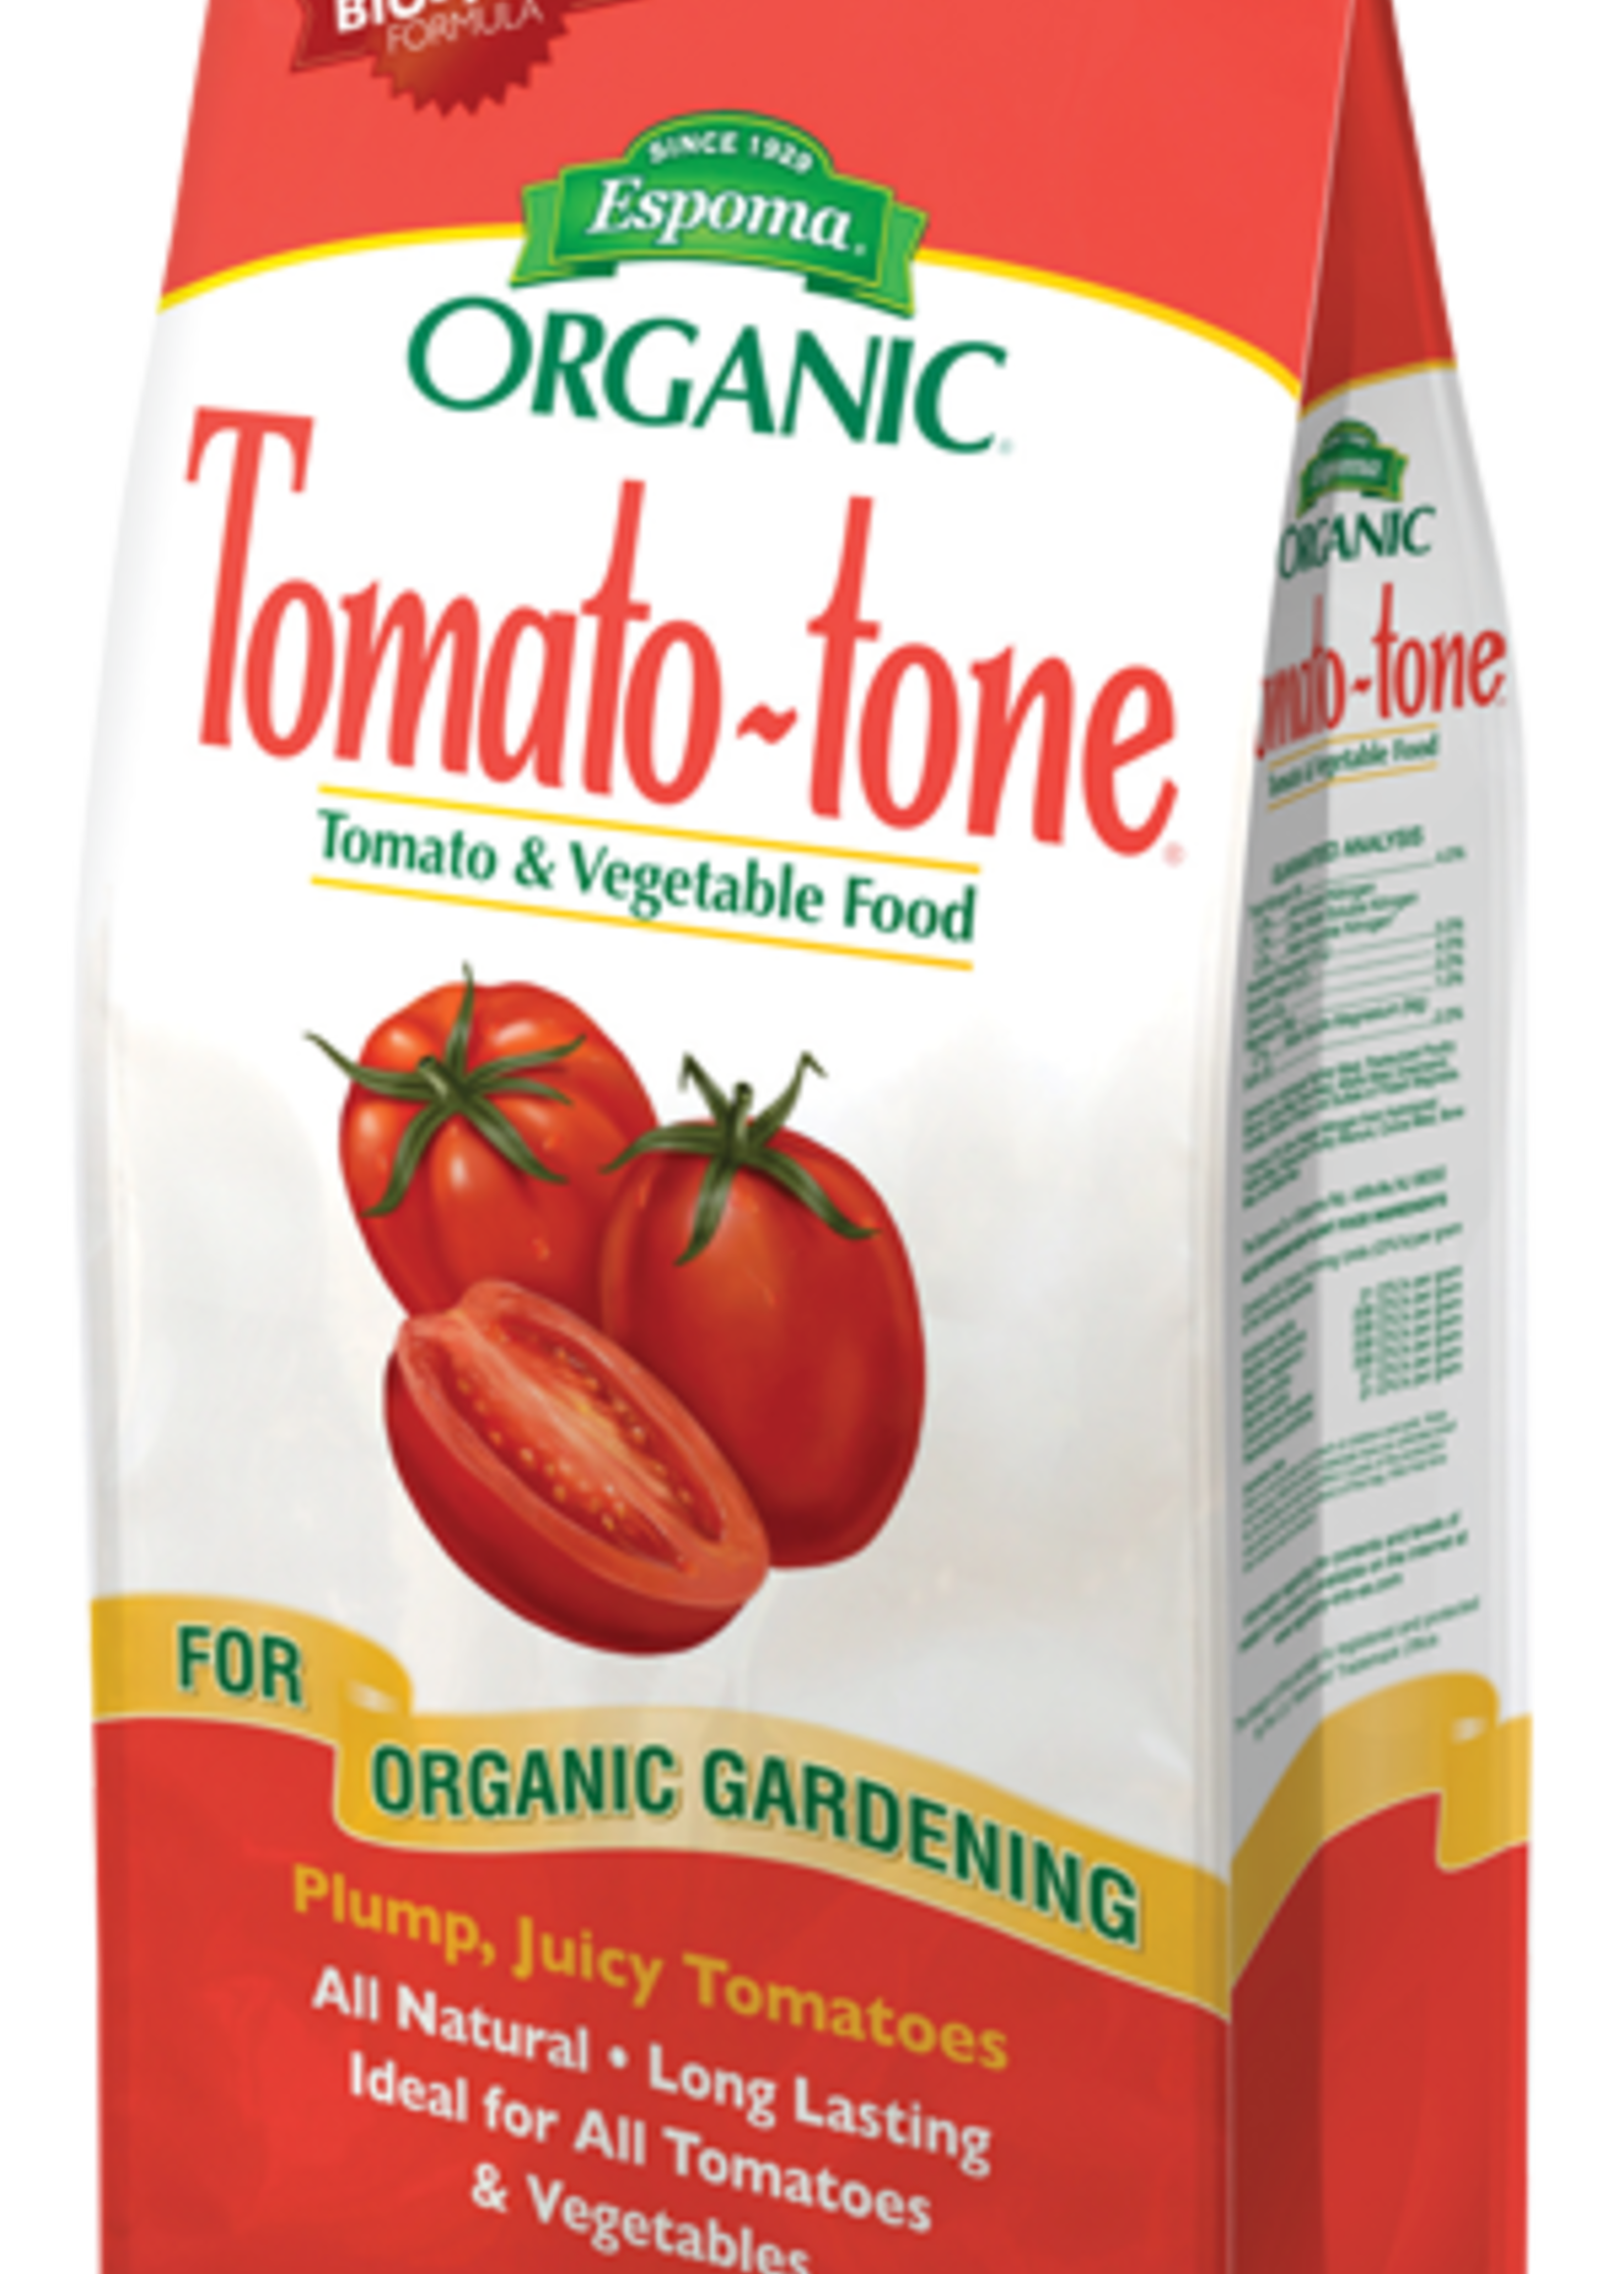 Espoma Tomato-tone 4#